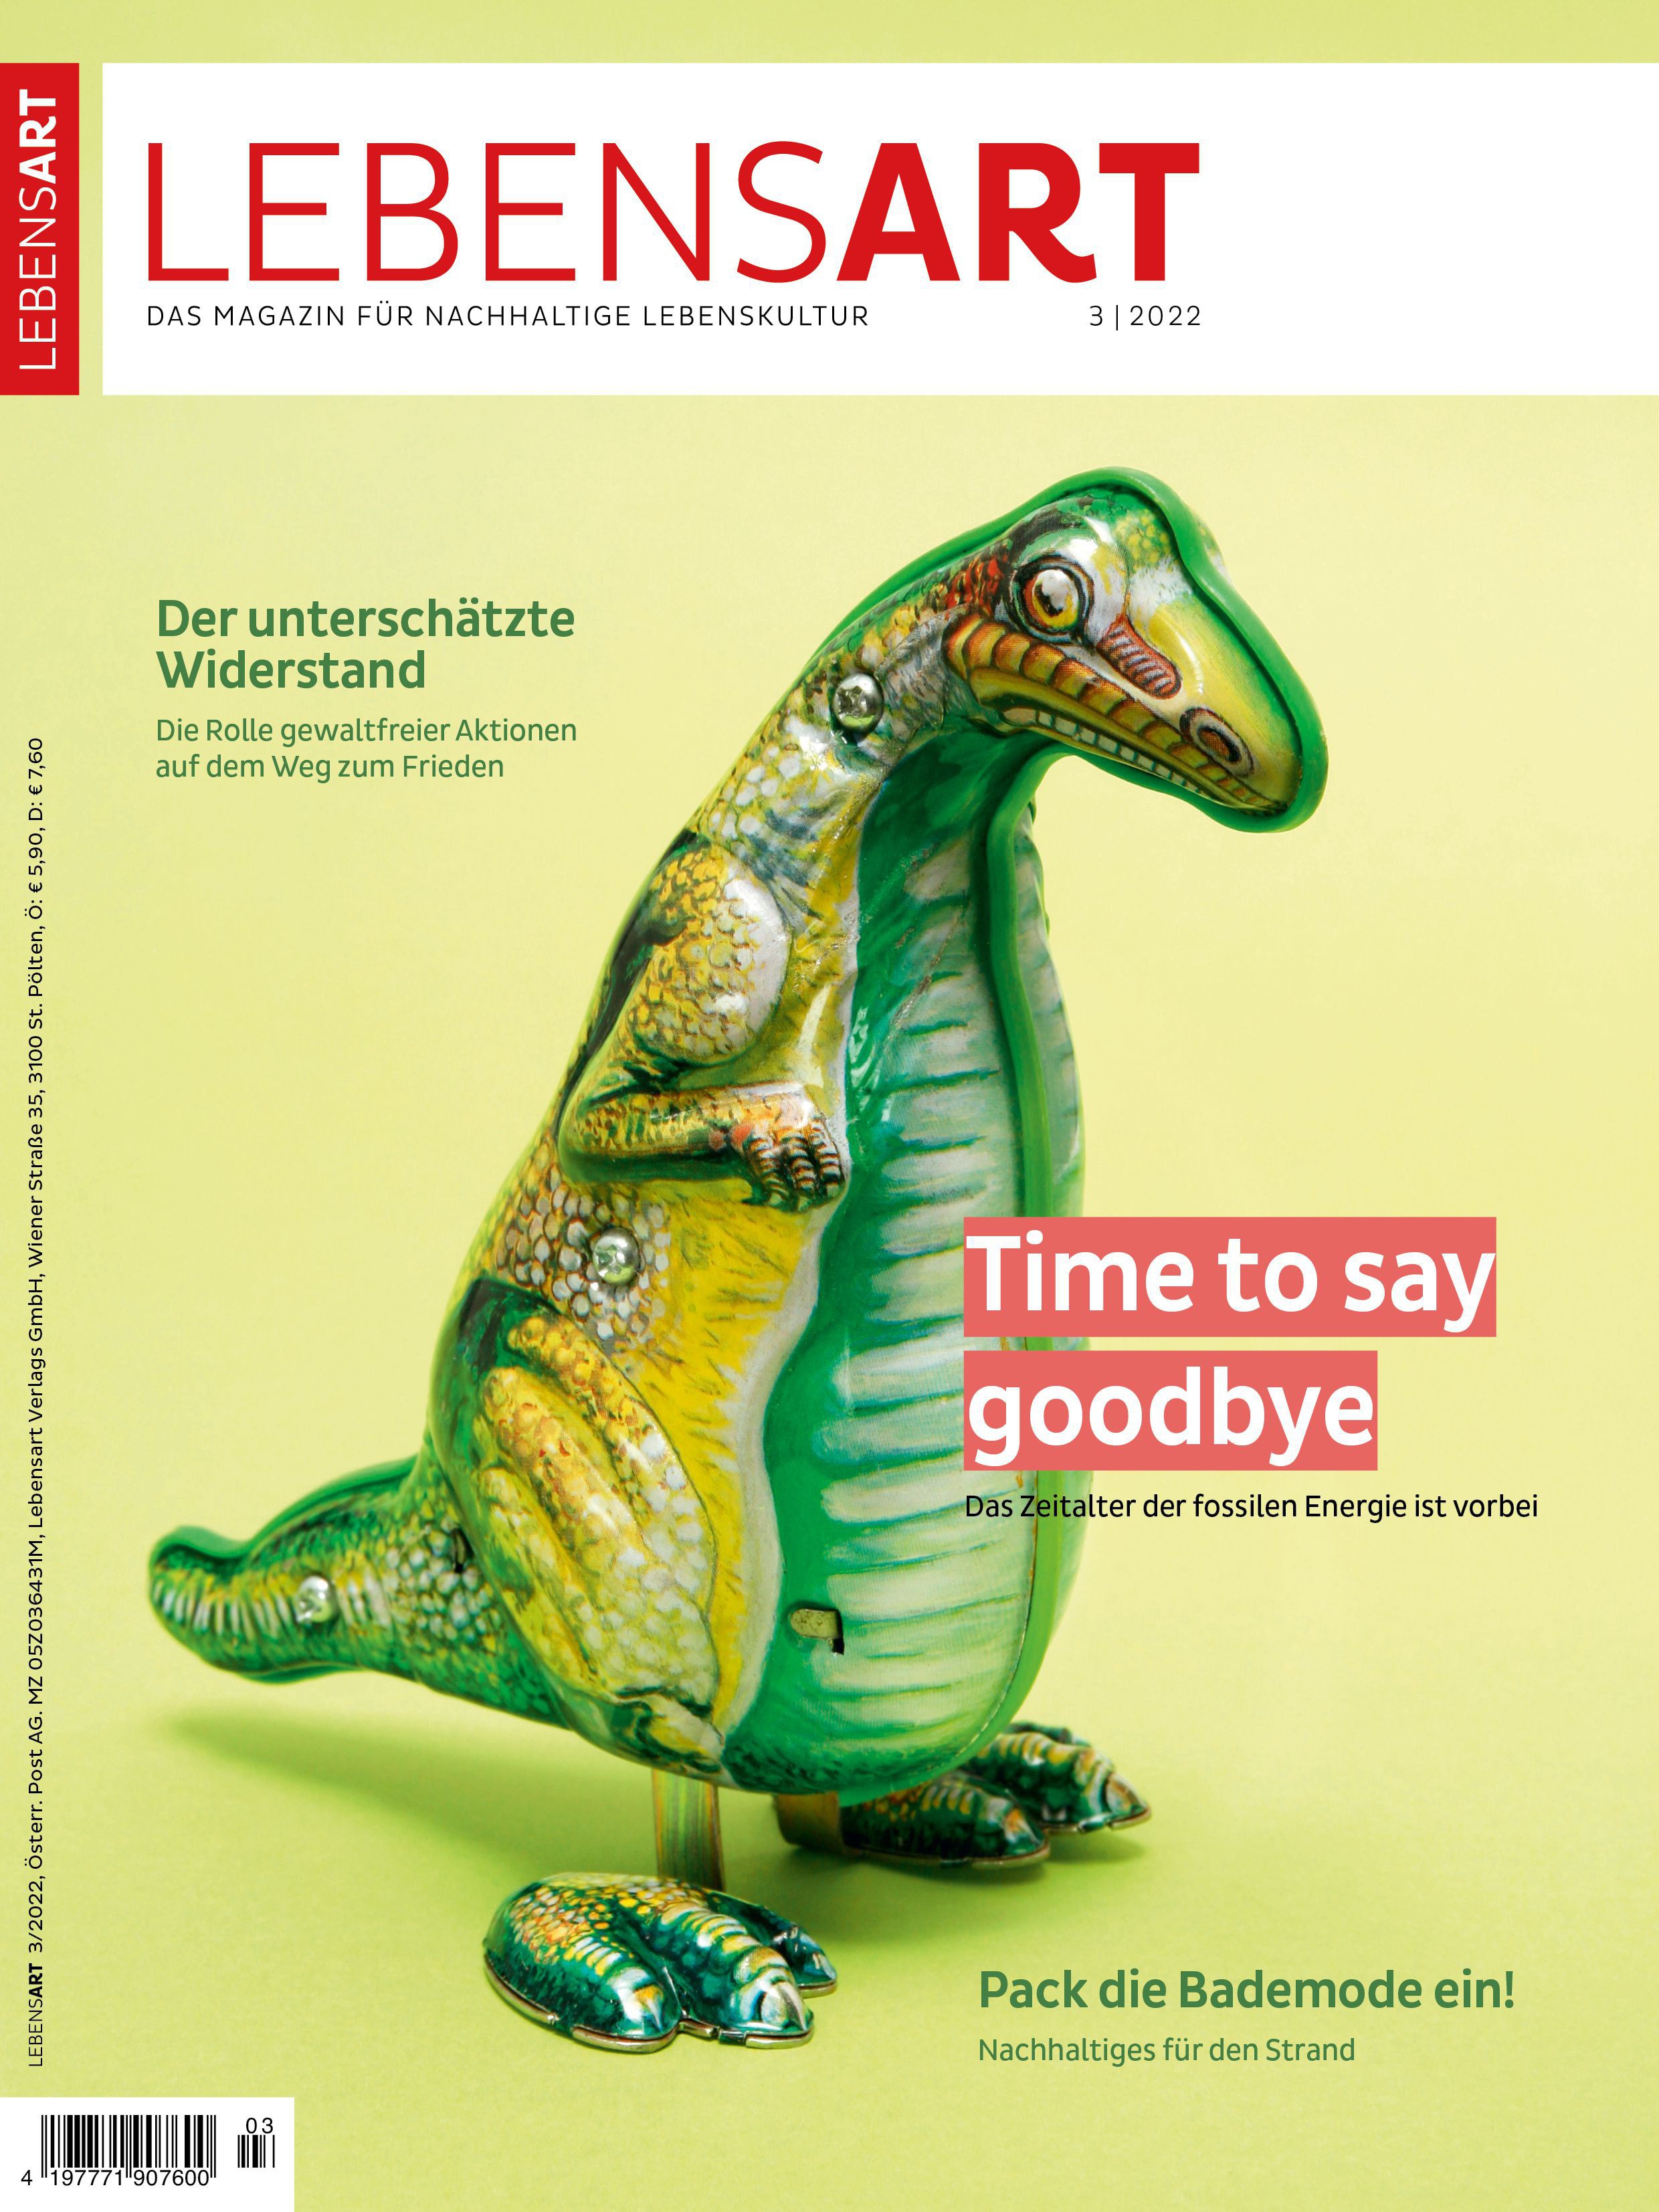 Auf dem Cover ist ein Blechdinosaurier vor hellgrünem Hintergrund zu sehen. Dabei steht: Time to say goodbye. Das Zeitalter der fossilen Energie ist vorbei.